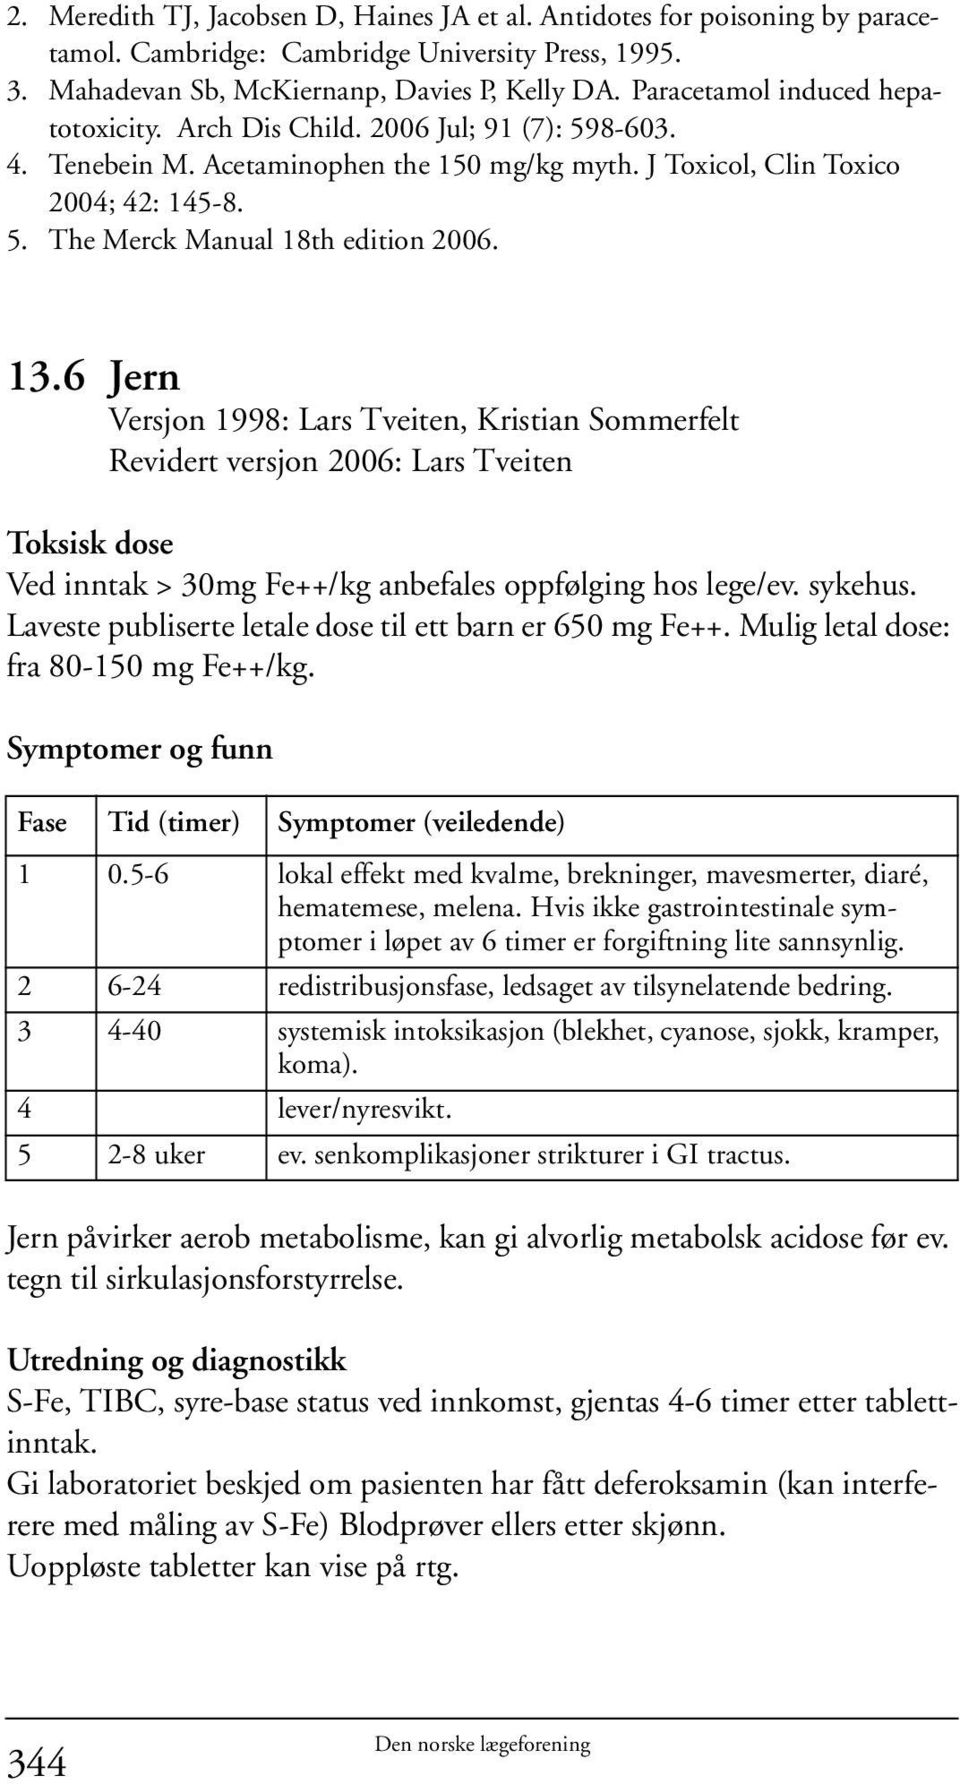 13.6 Jern Versjon 1998: Lars Tveiten, Kristian Sommerfelt Revidert versjon 2006: Lars Tveiten Toksisk dose Ved inntak > 30mg Fe++/kg anbefales oppfølging hos lege/ev. sykehus.